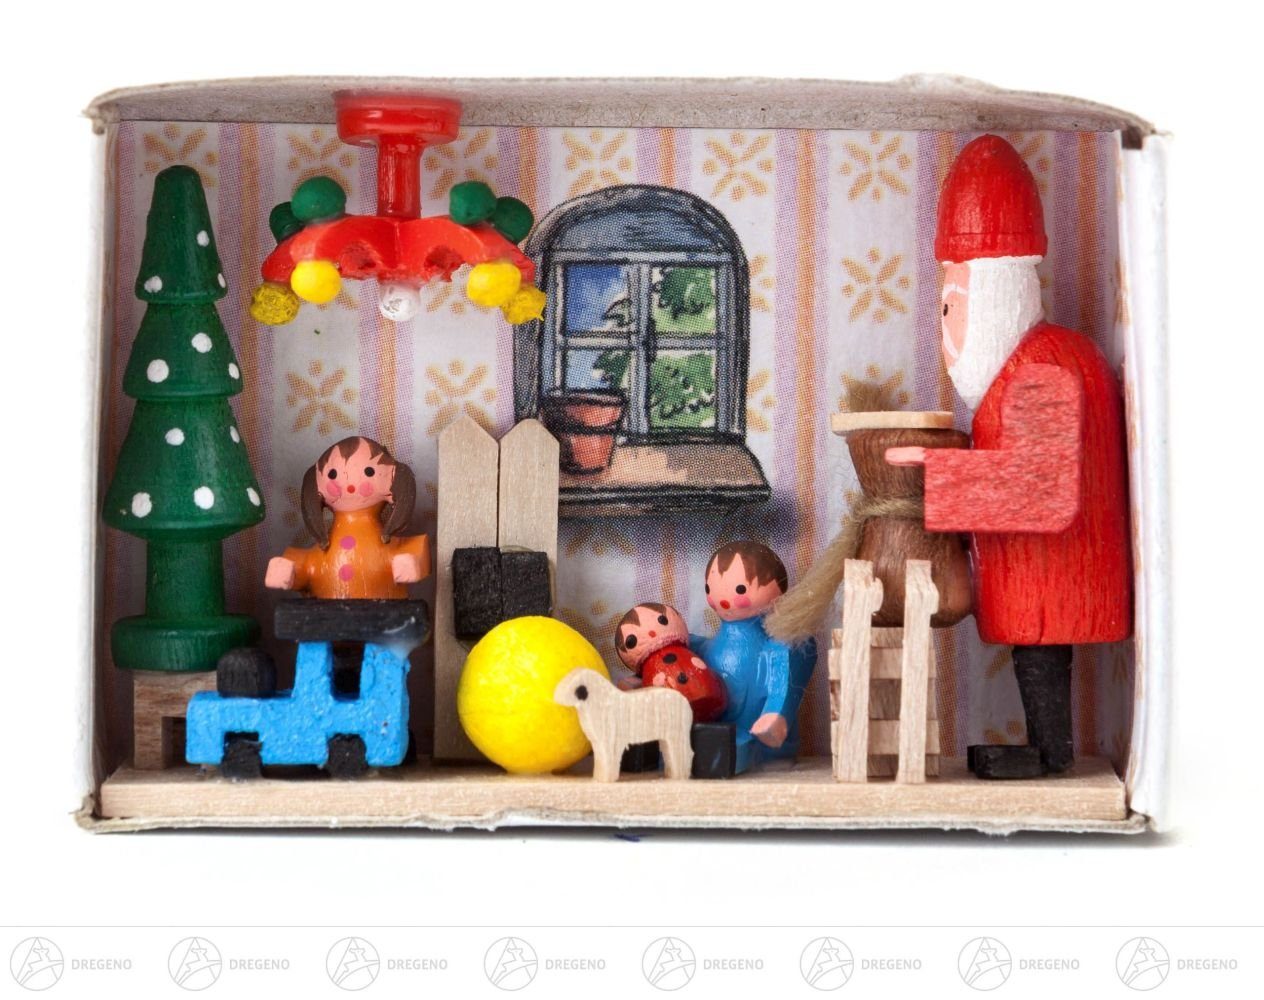 Dregeno Erzgebirge Weihnachtsfigur Miniatur Zündholzschachtel Bescherung Breite x Höhe ca 5,5 cmx4 cm, für Setzkasten